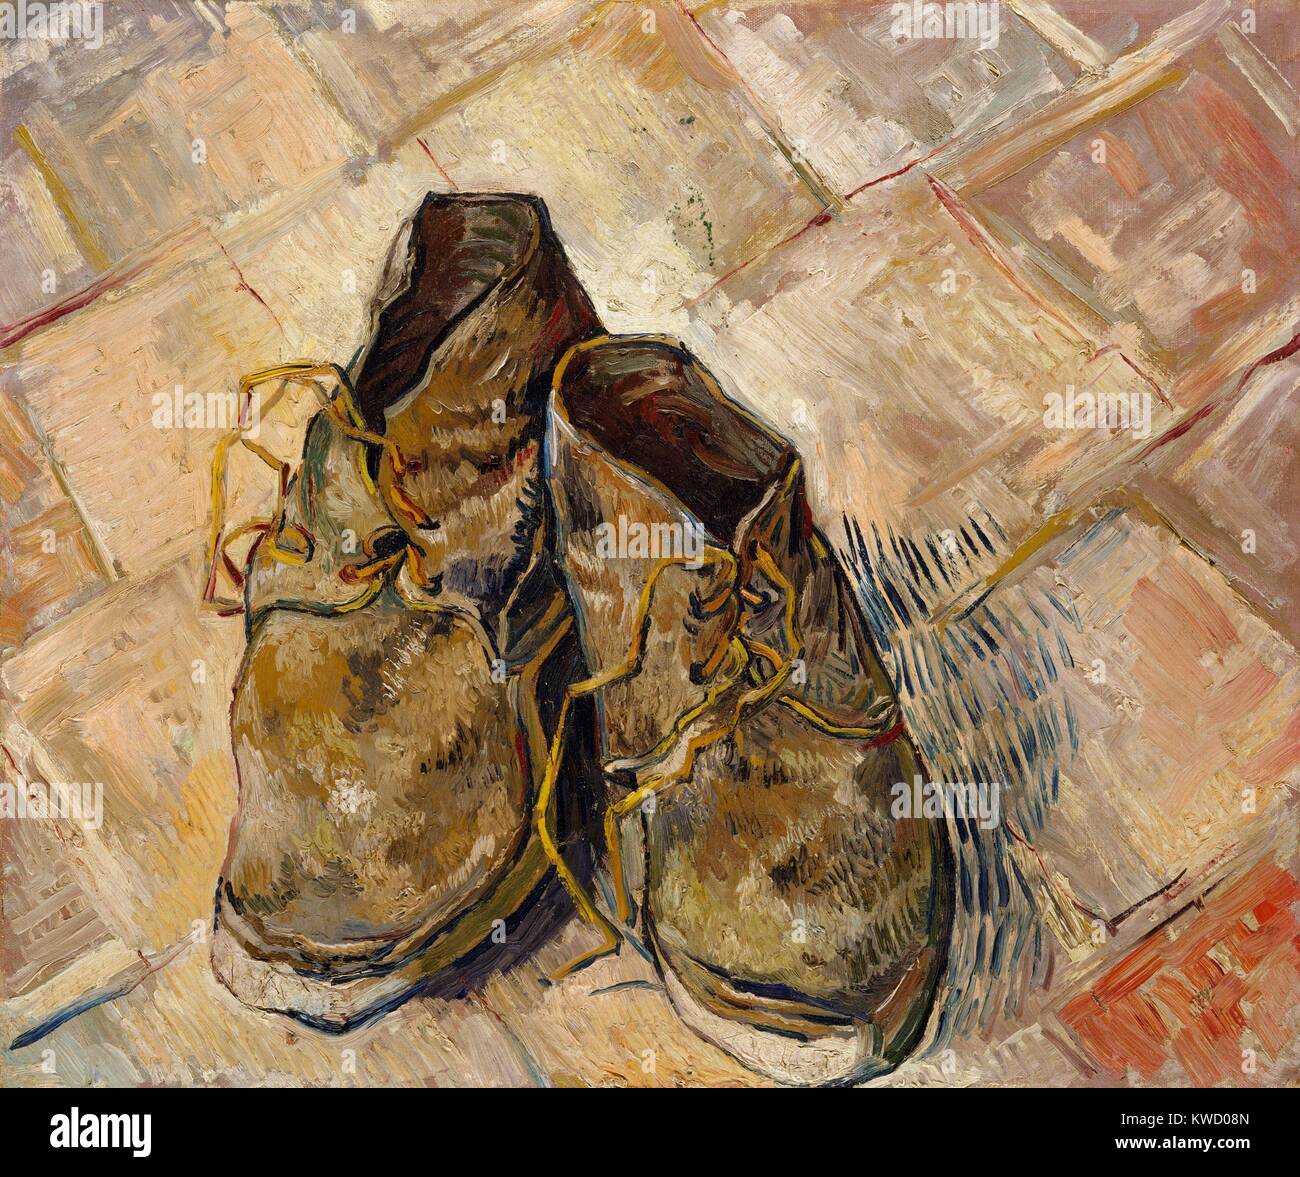 Scarpe di Vincent Van Gogh, 1888, olandese Post-Impressionist, olio su tela. Questi pattini usurati sono state dipinte in rosso-piastrelle del pavimento della casa gialla, la sua casa e studio in Arles (BSLOC 2017 5 39) Foto Stock